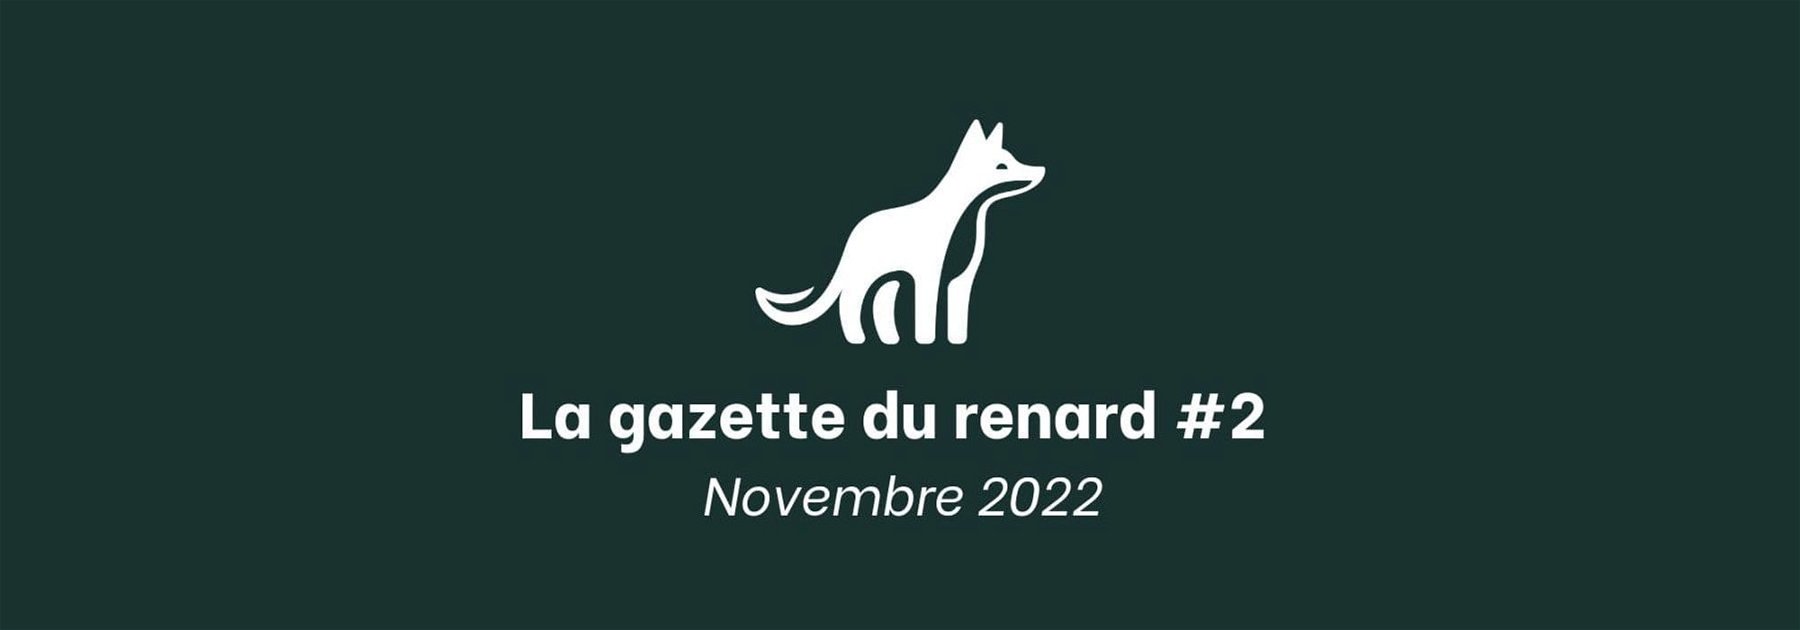 La Gazette du Renard #2 - Novembre 2022